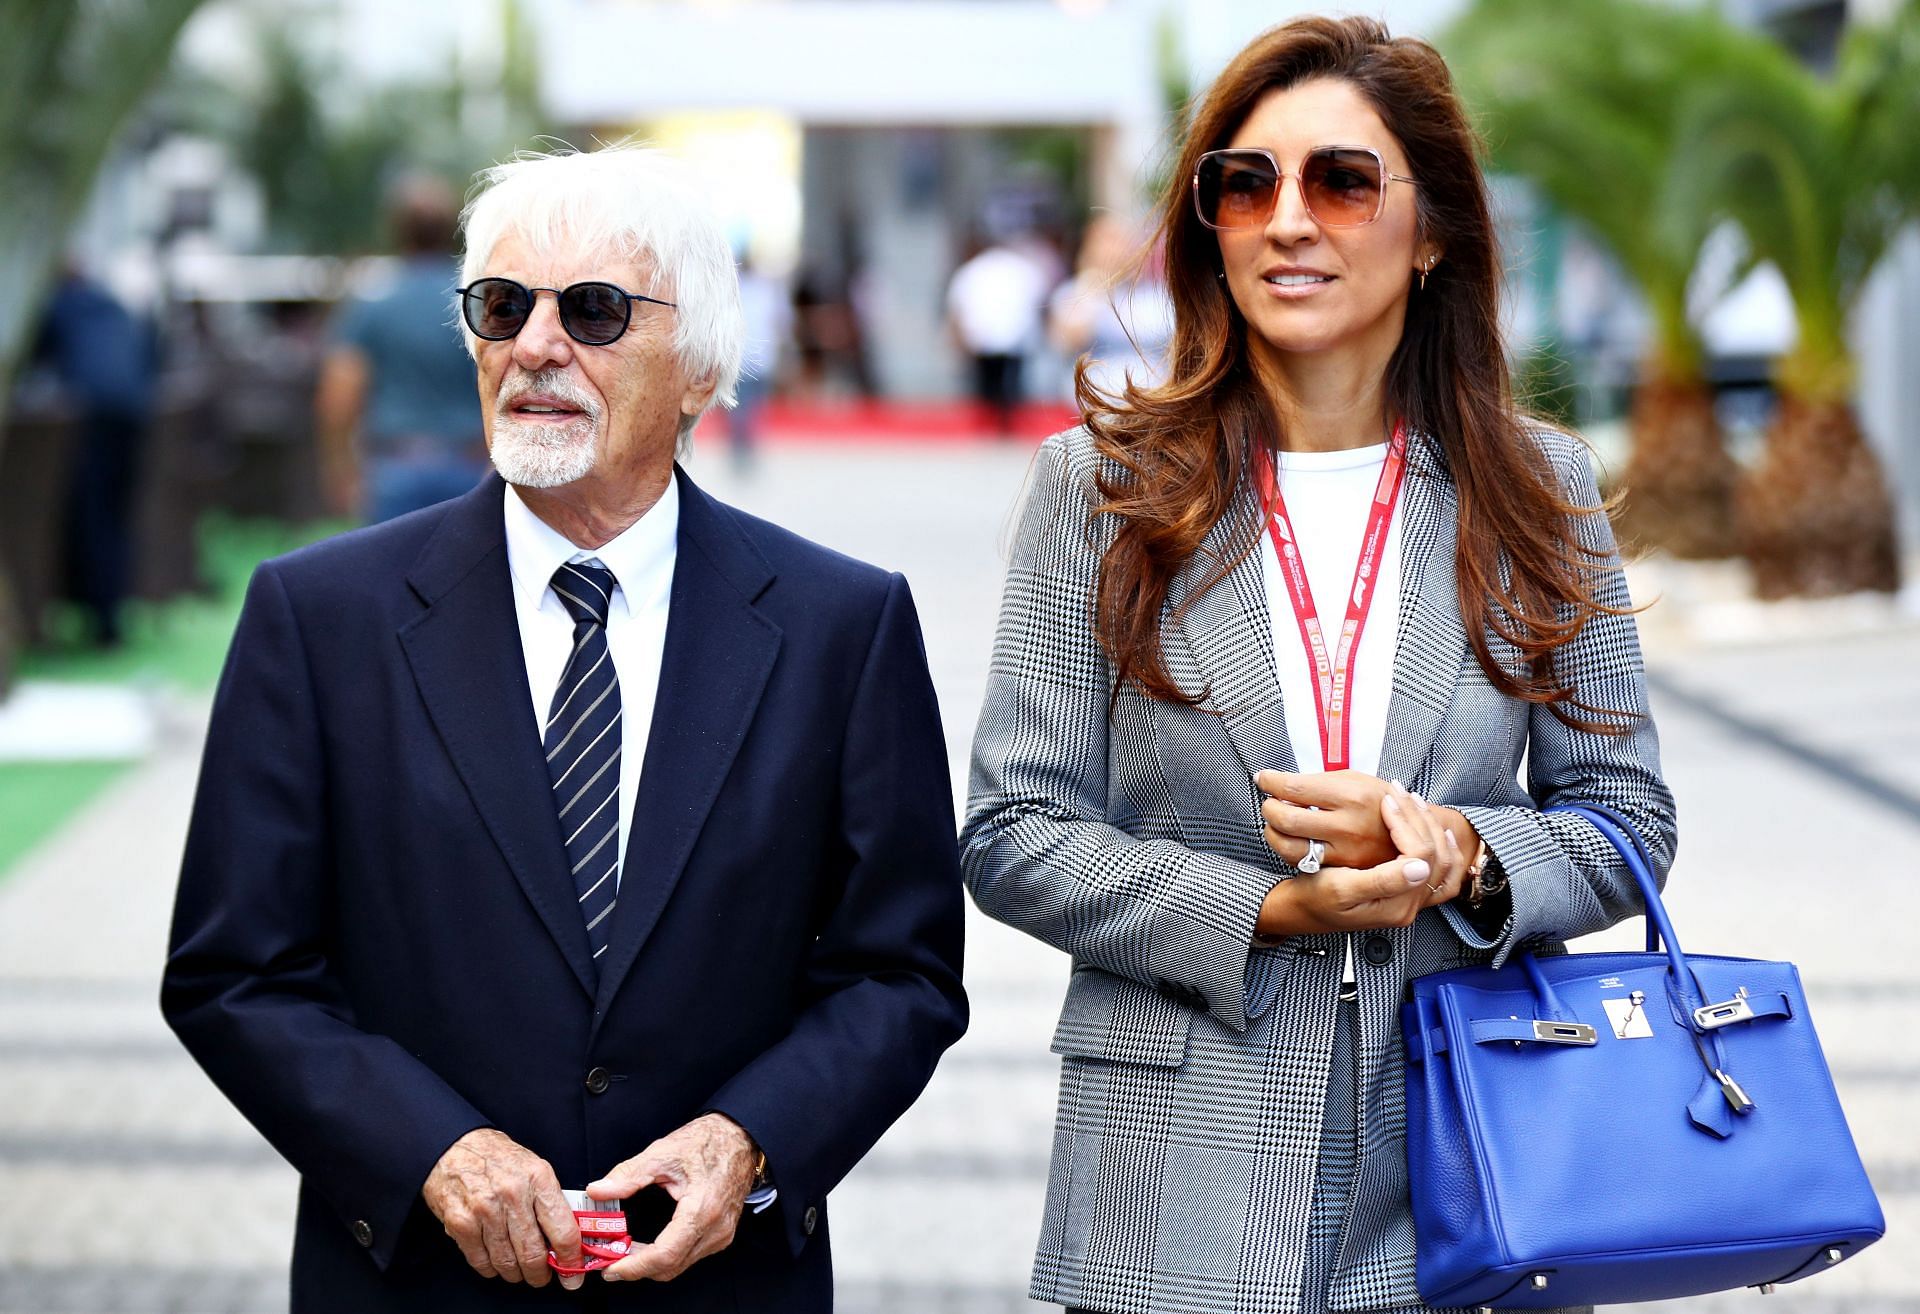 F1 Grand Prix of Russia - Bernie and Fabiana Ecclestone arrive in Russia.